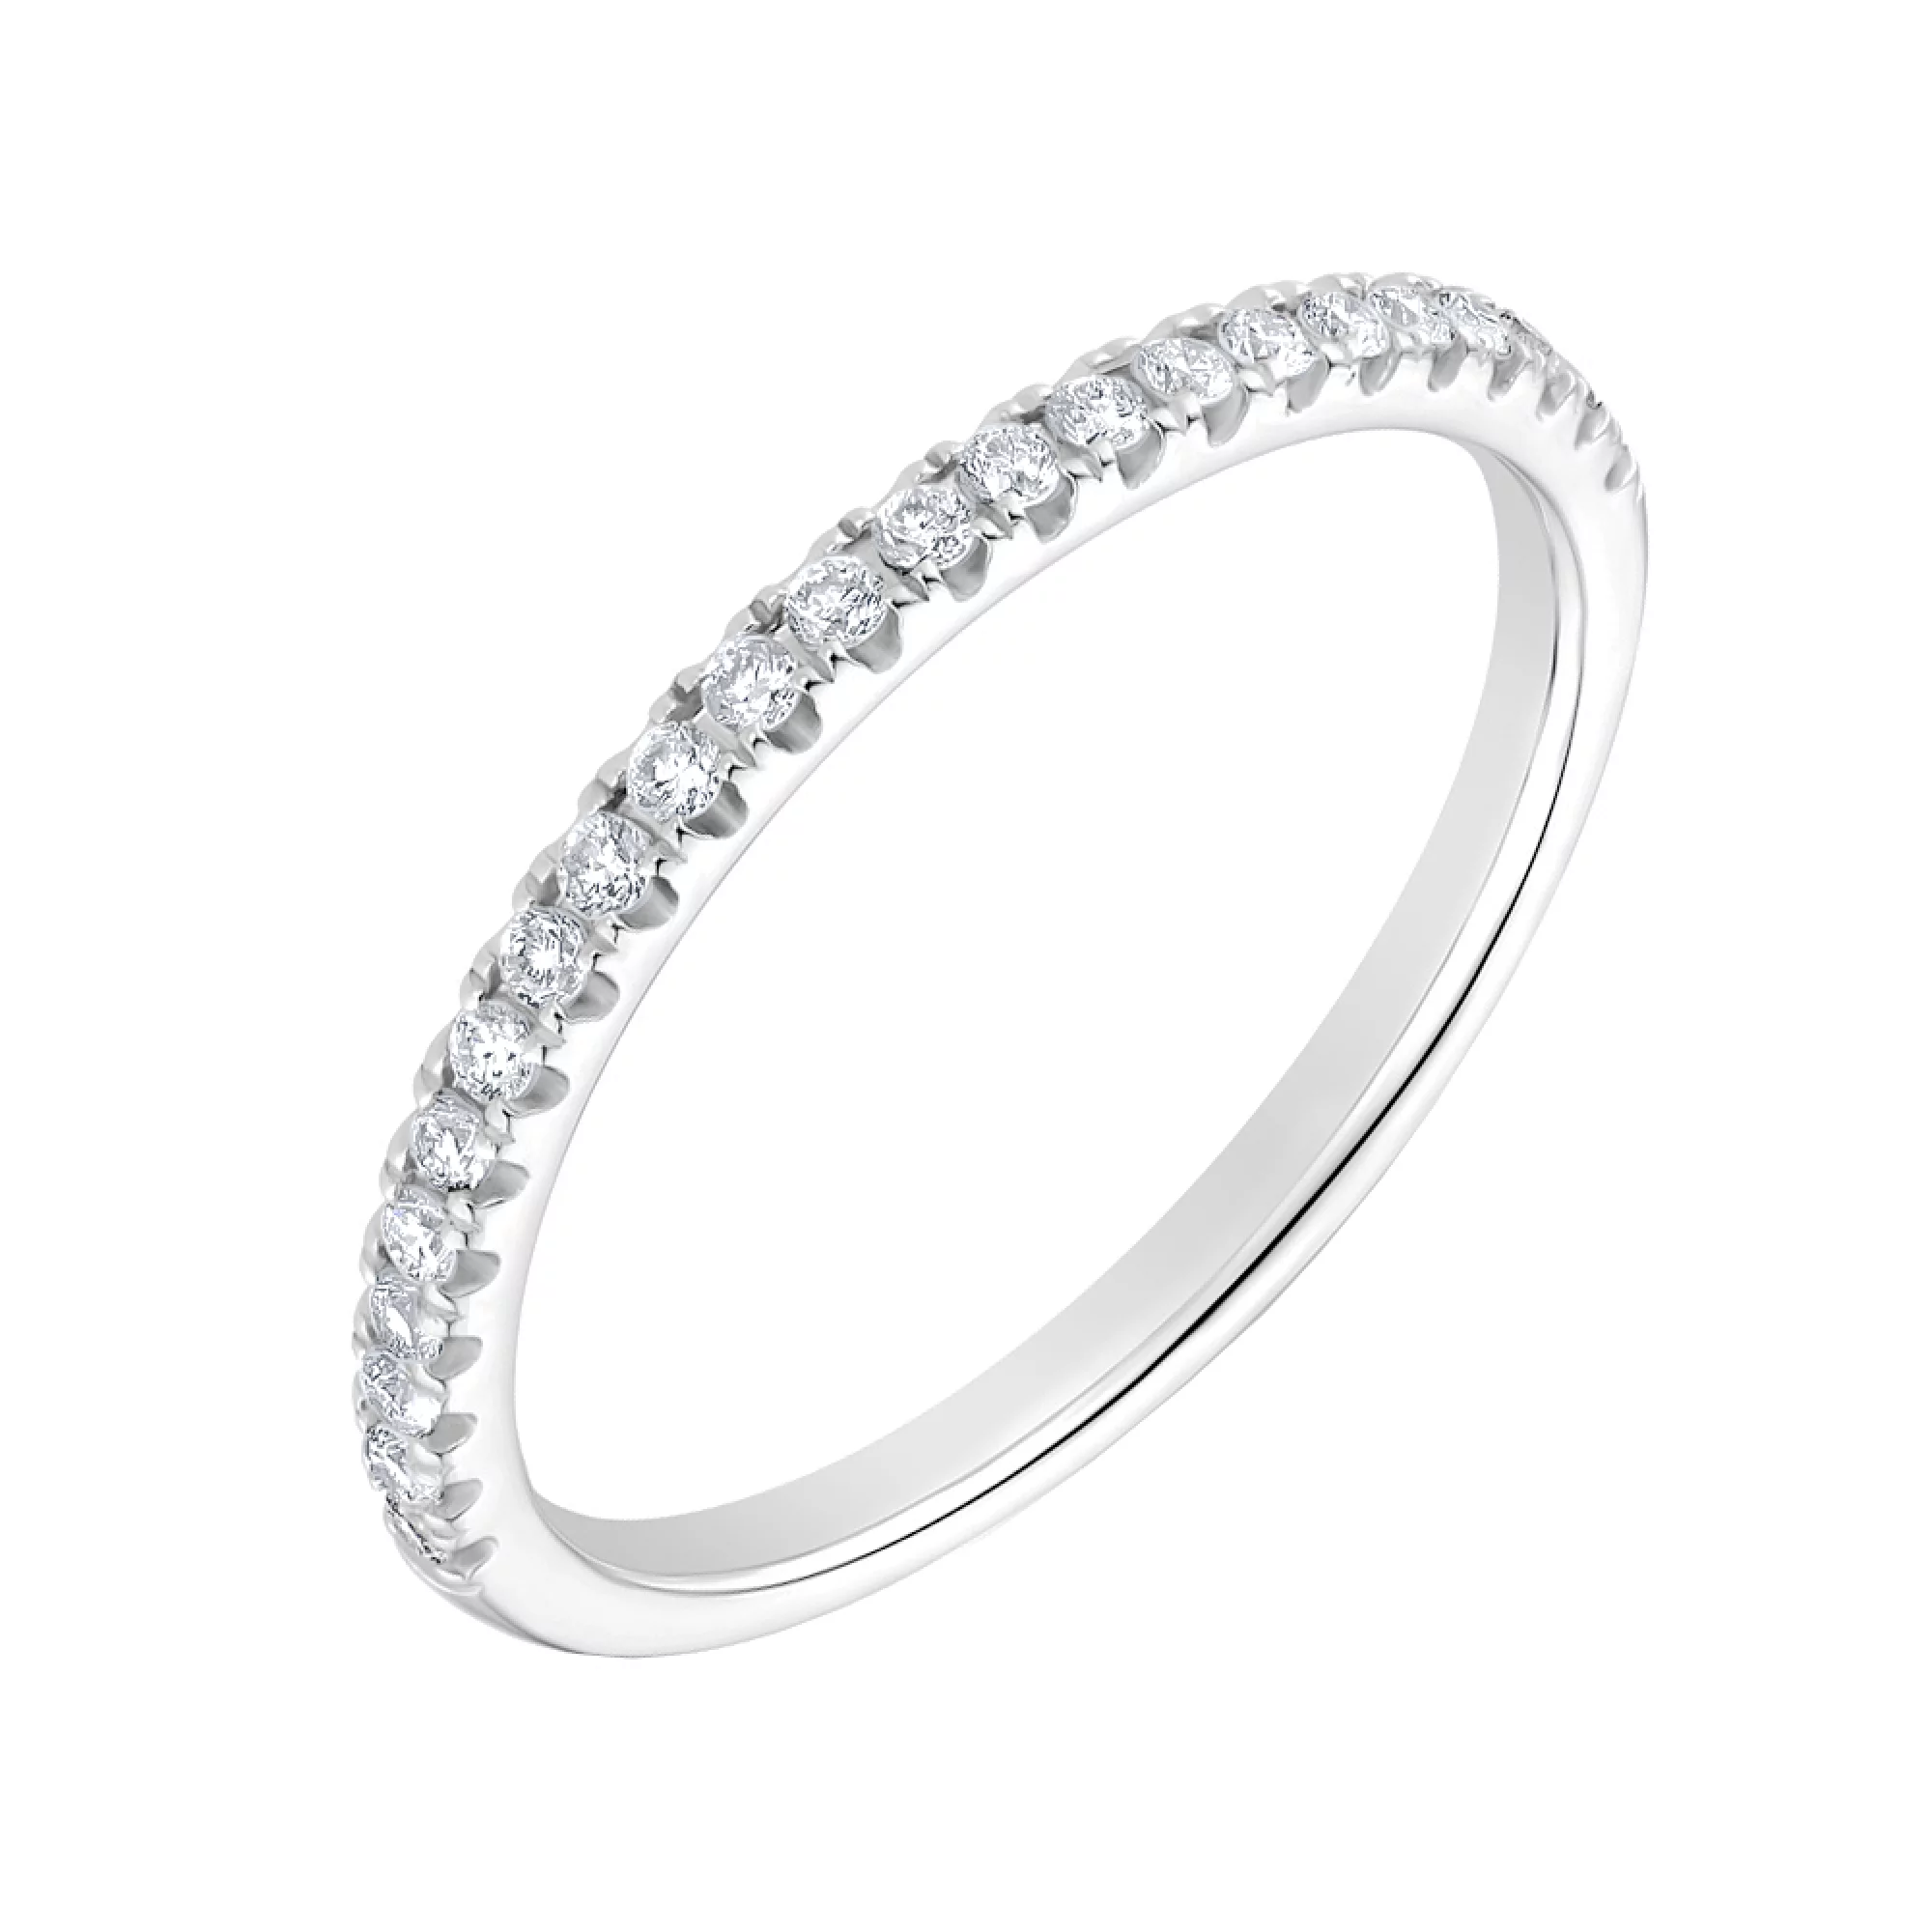 Тонкое золотое кольцо с дорожкой бриллиантов - 1704453 – изображение 1